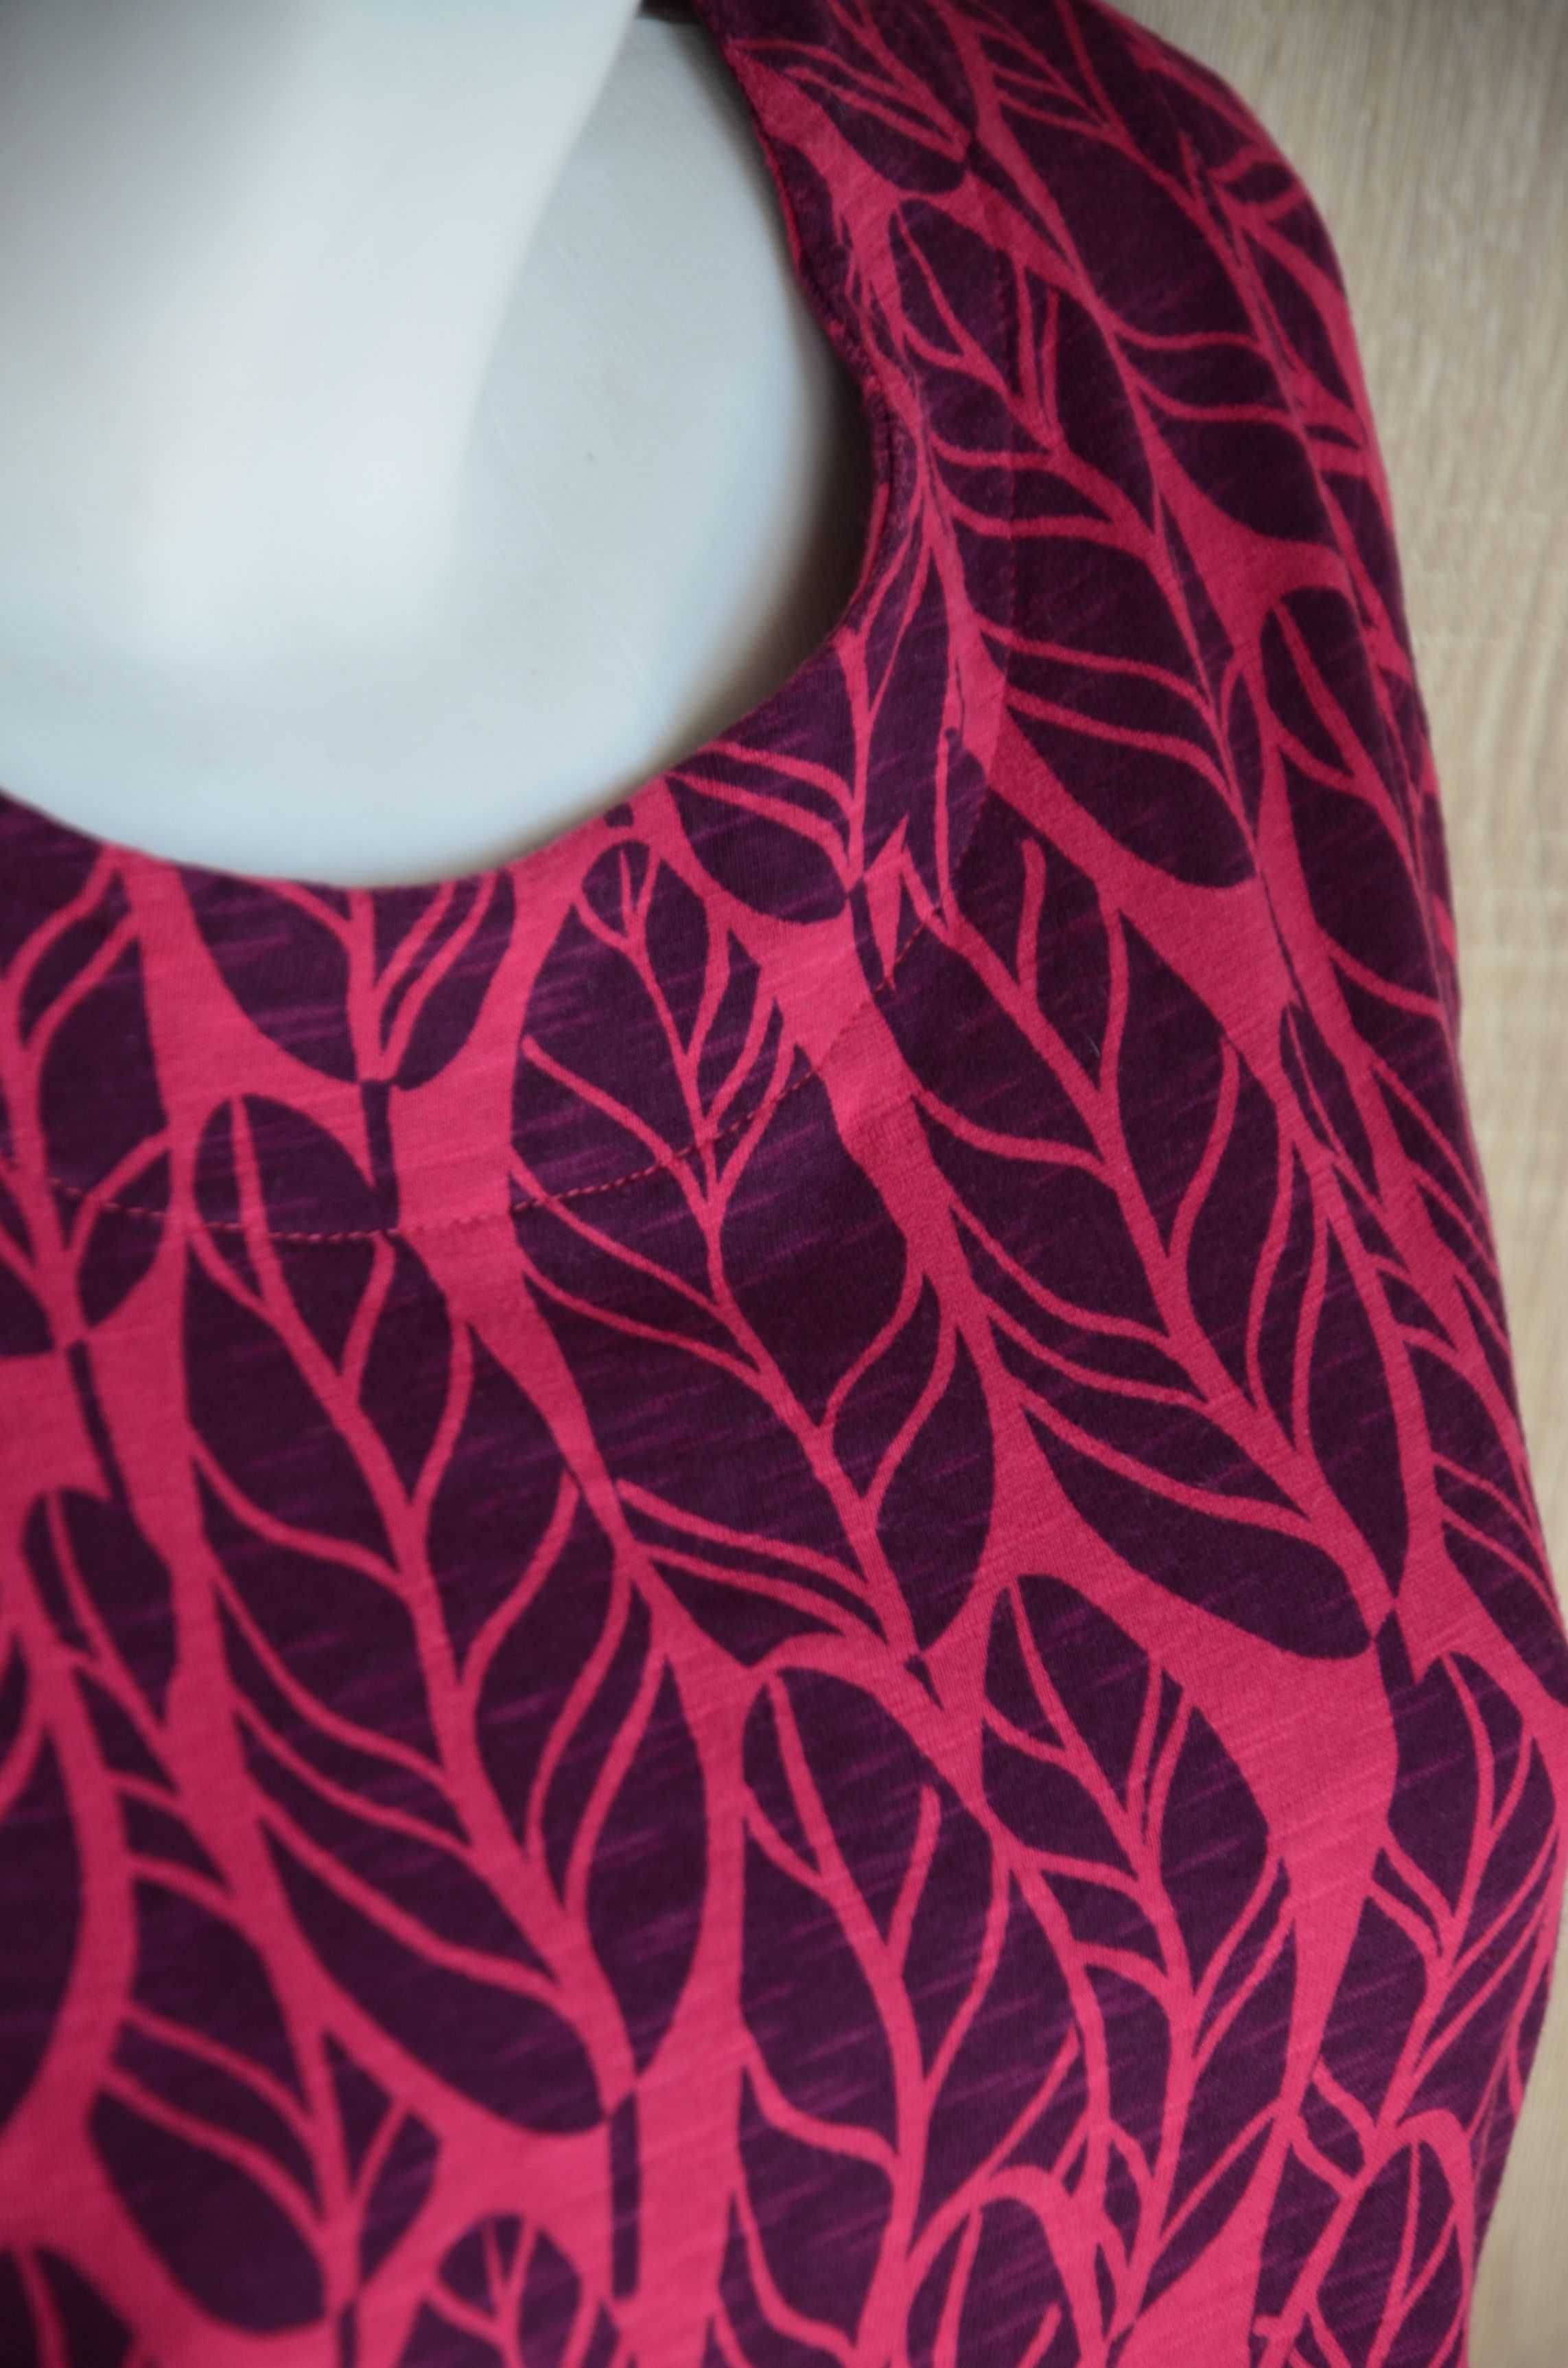 Bluzka tunika różowa we wzory liście baskinka rękaw 3/4 M L 38 40